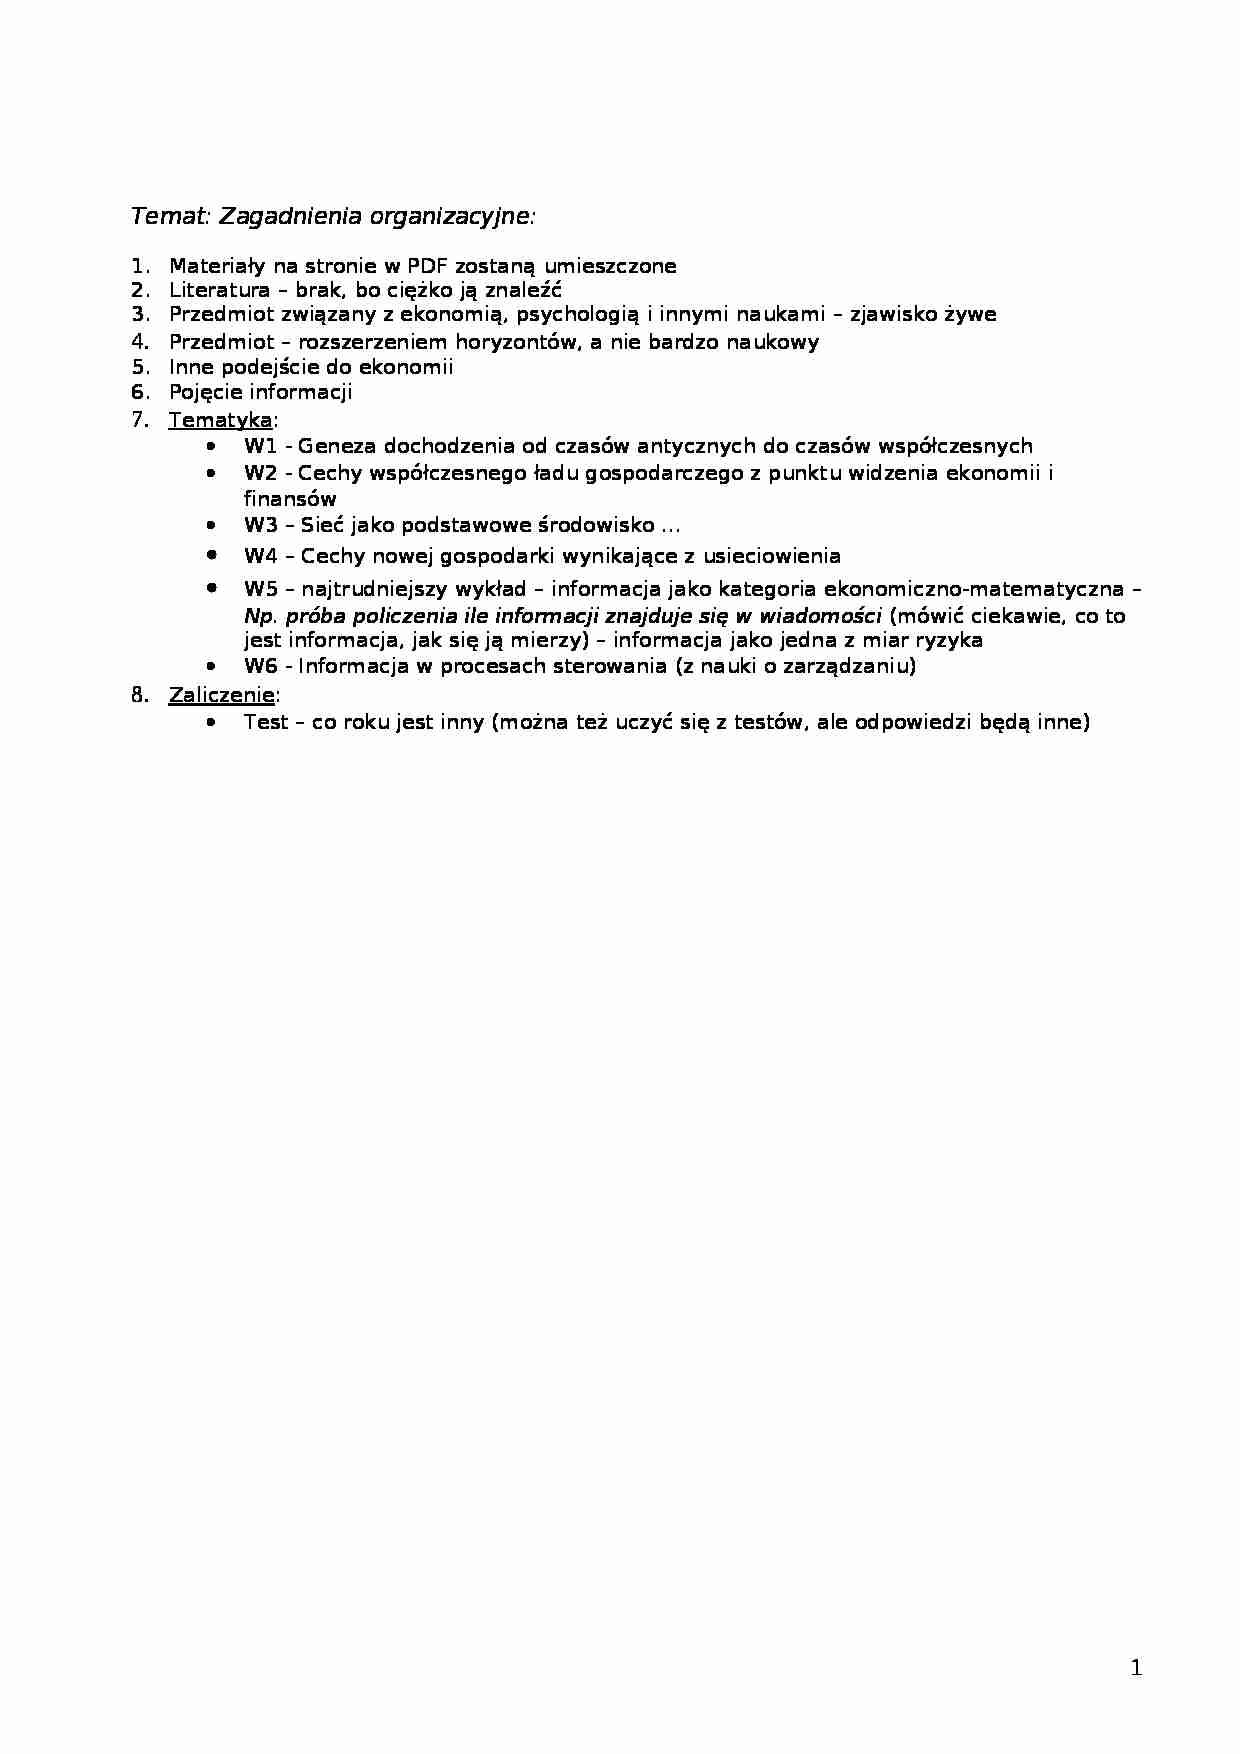 Zagadnienia organizacyjne z przedmiotu - strona 1